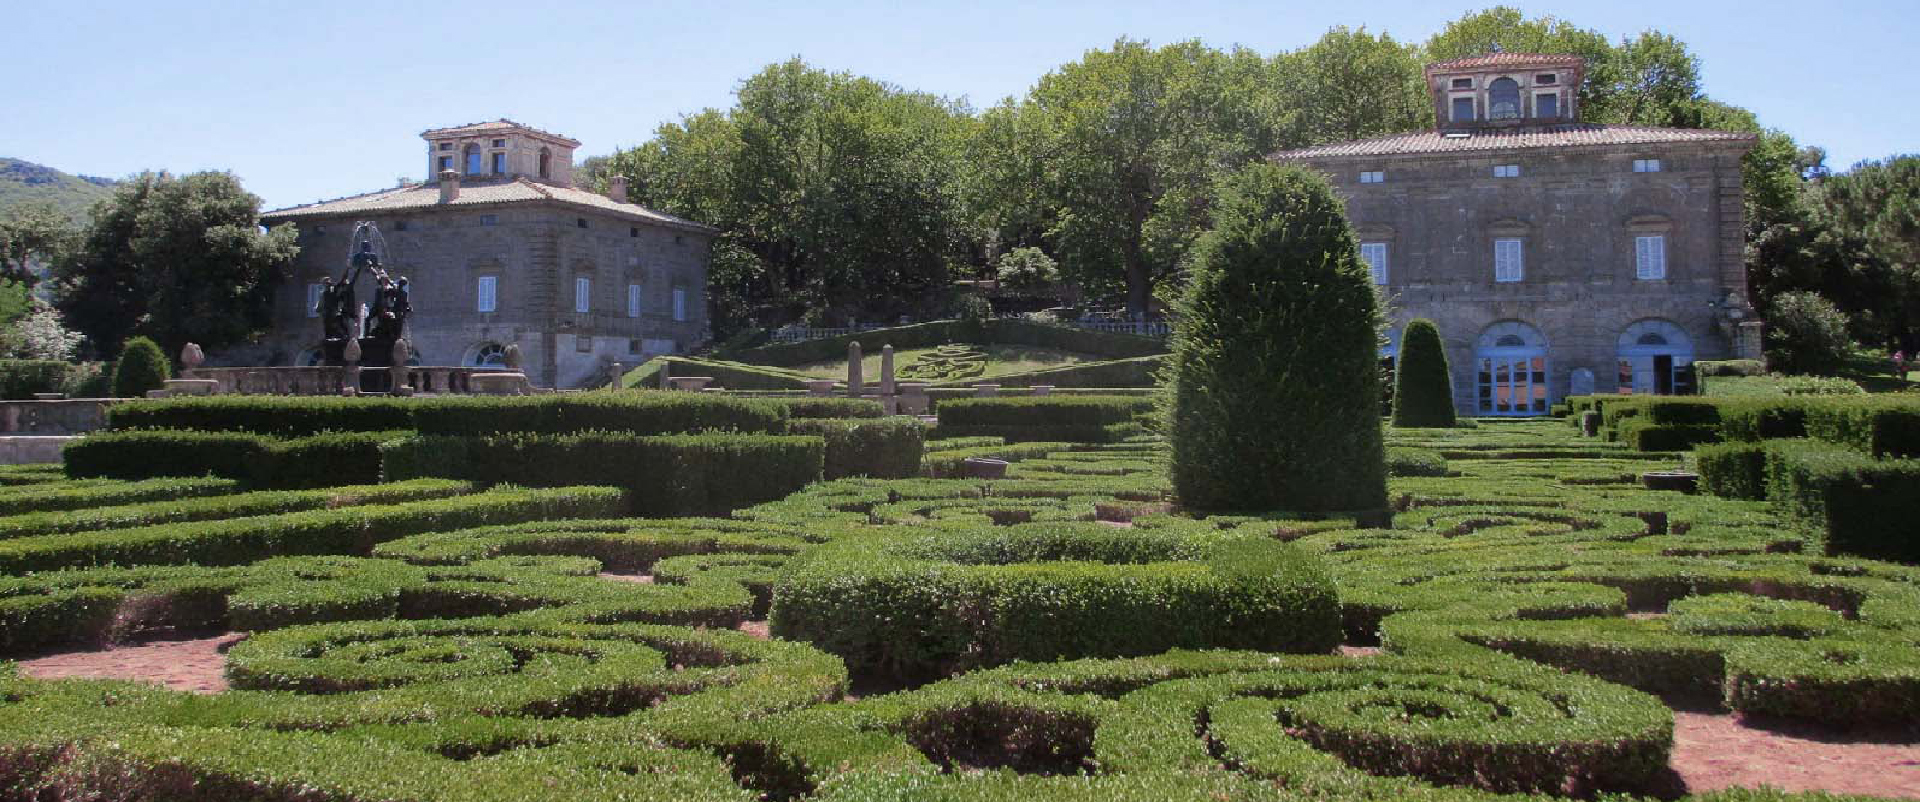 Villa Lante - VT - Il giardino formale e le palazzine gemelle sullo sfondo